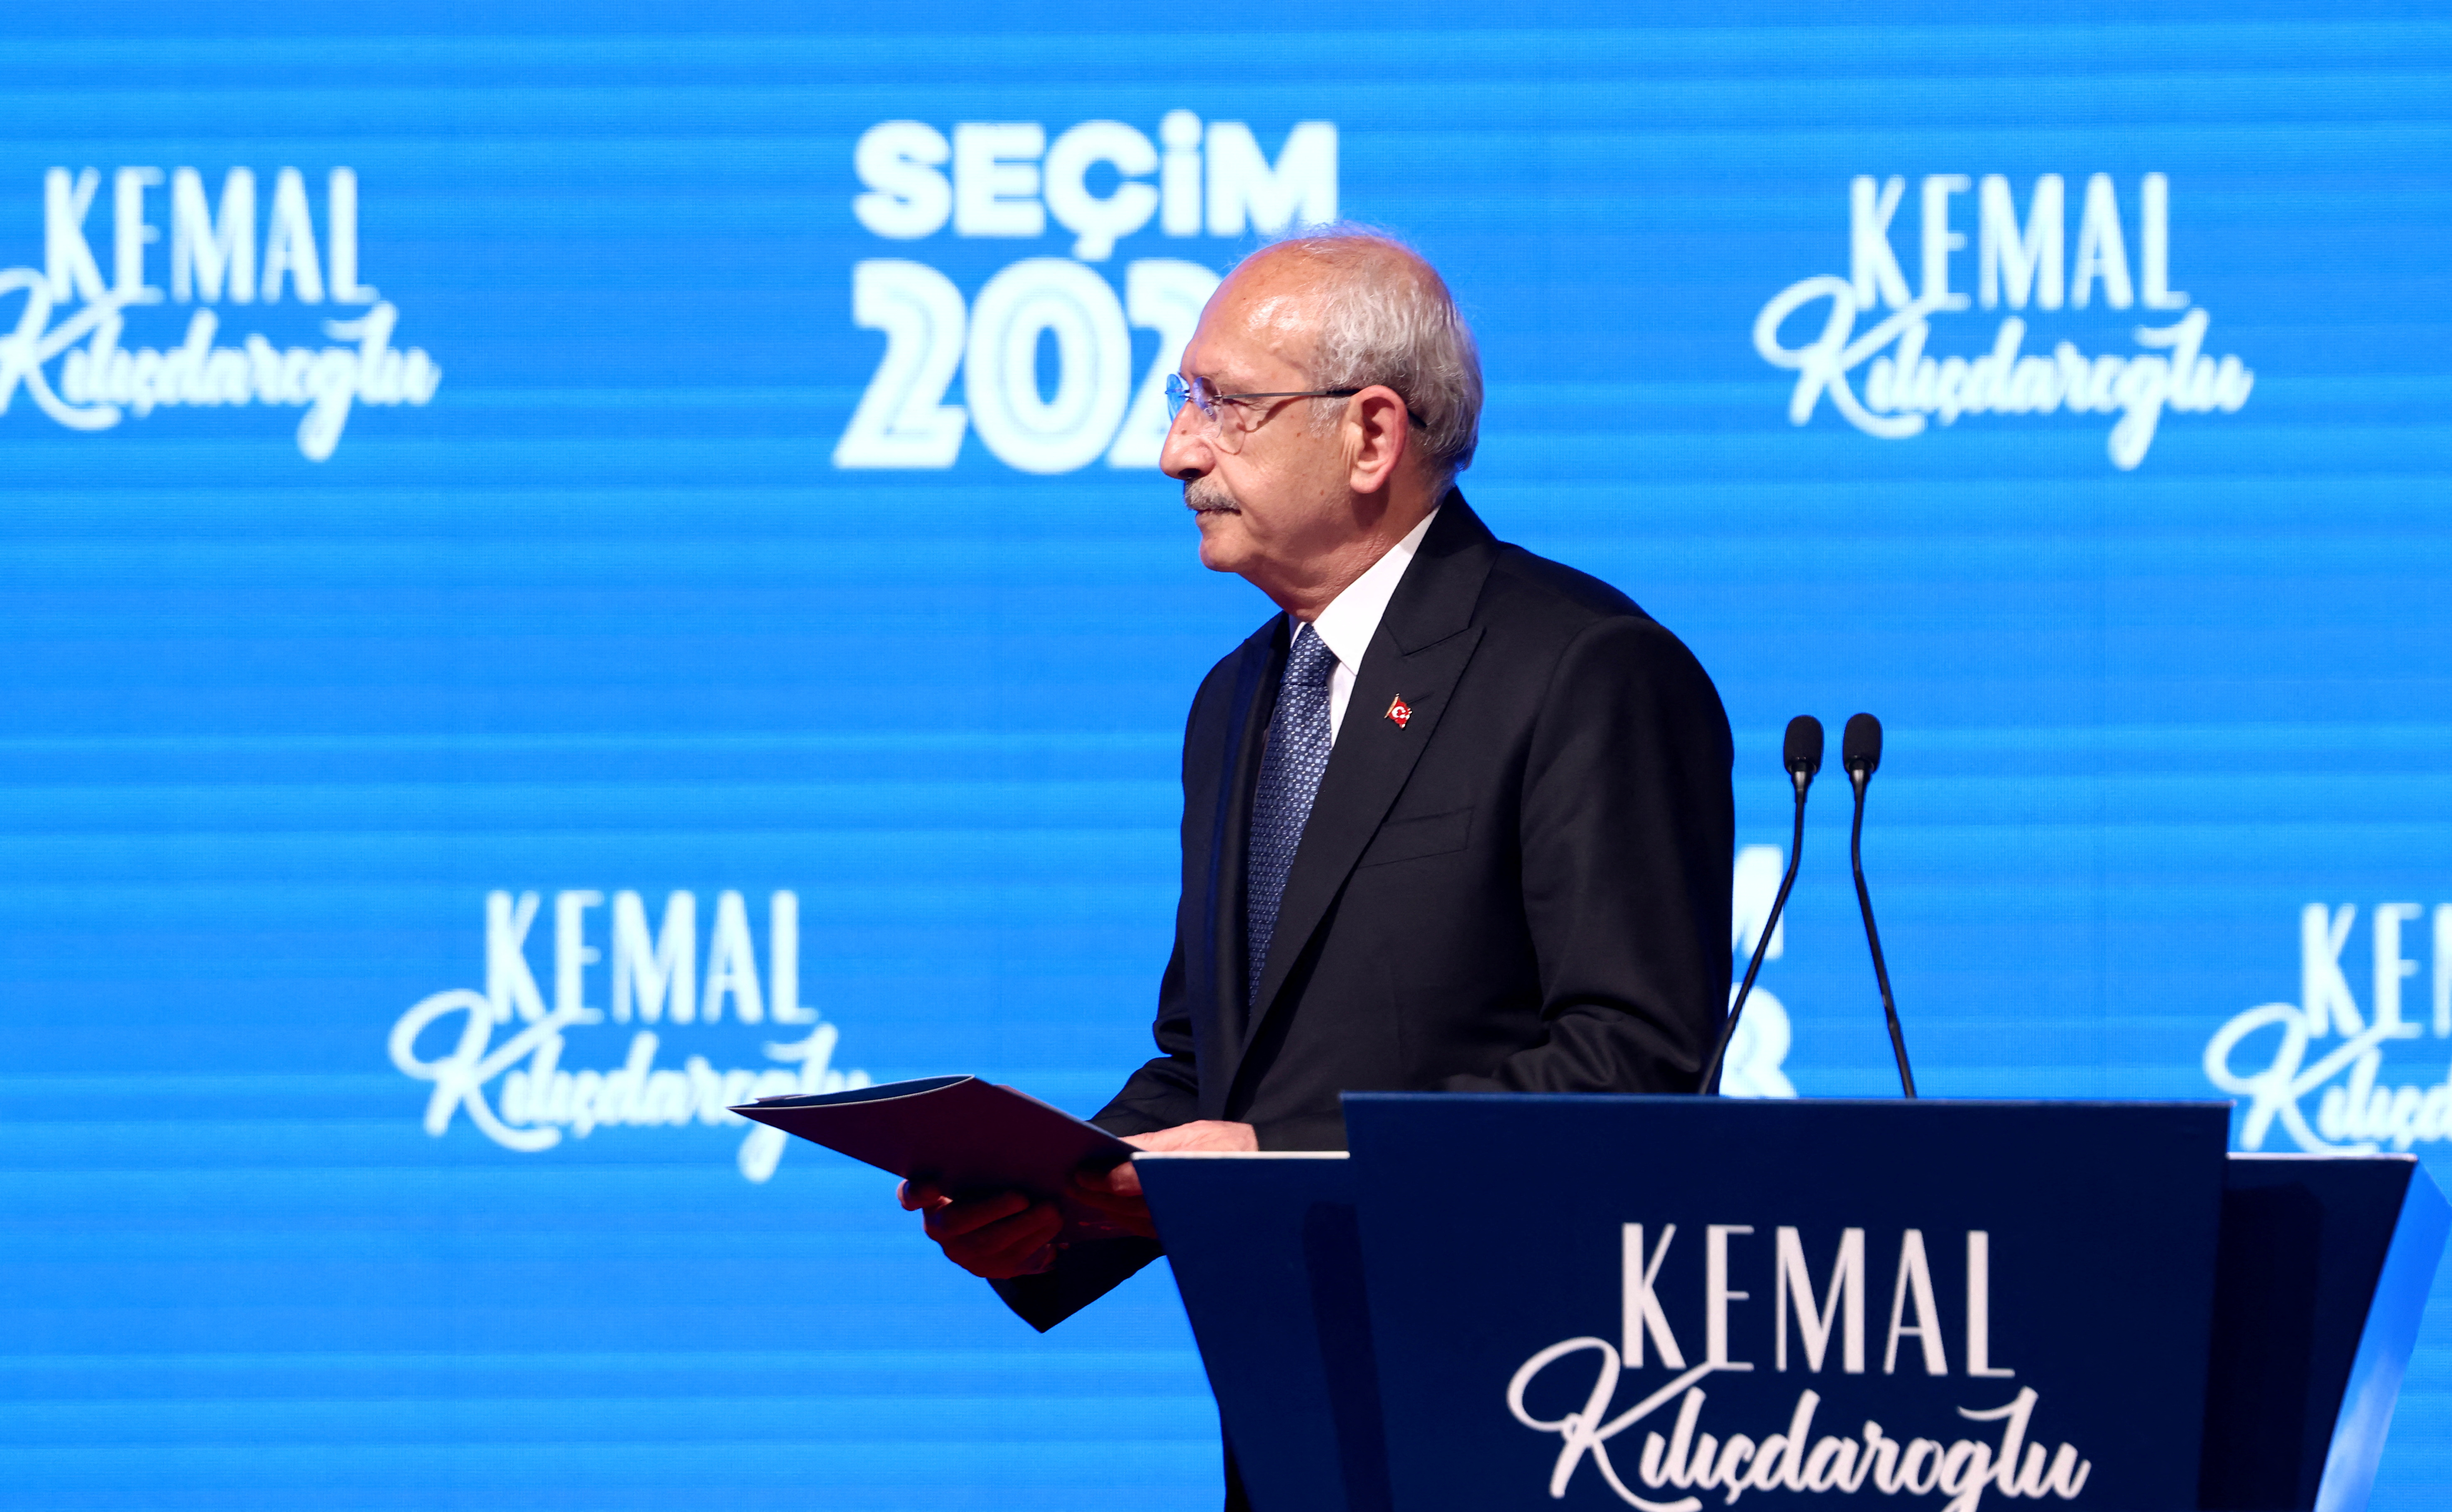 El candidato desconocido en Occidente, Kemal Kilicdaroglu, empujó a Erdogan a una histórica segunda vuelta en Turquía